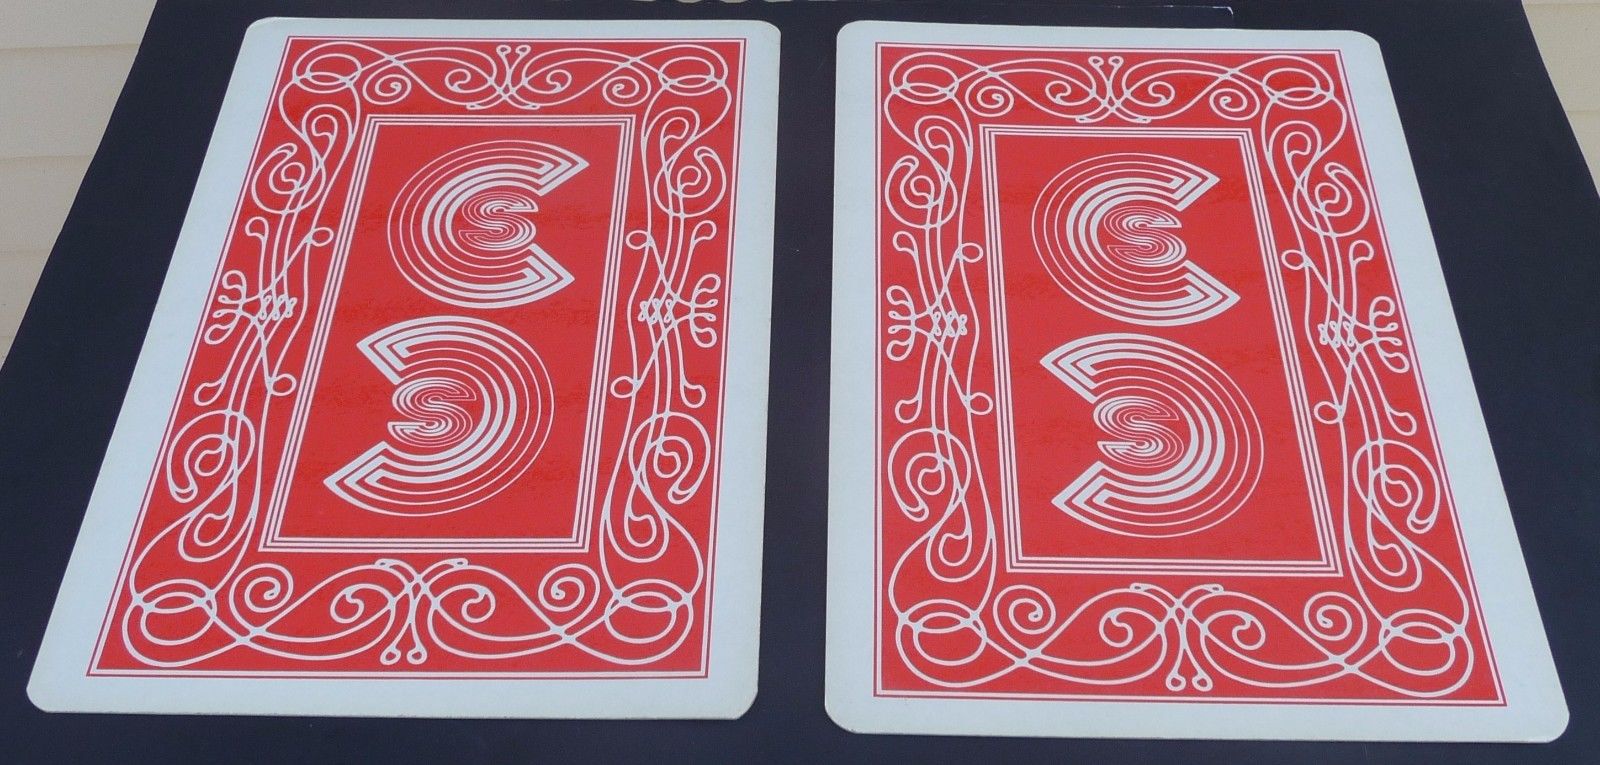 card shark vs card sharp